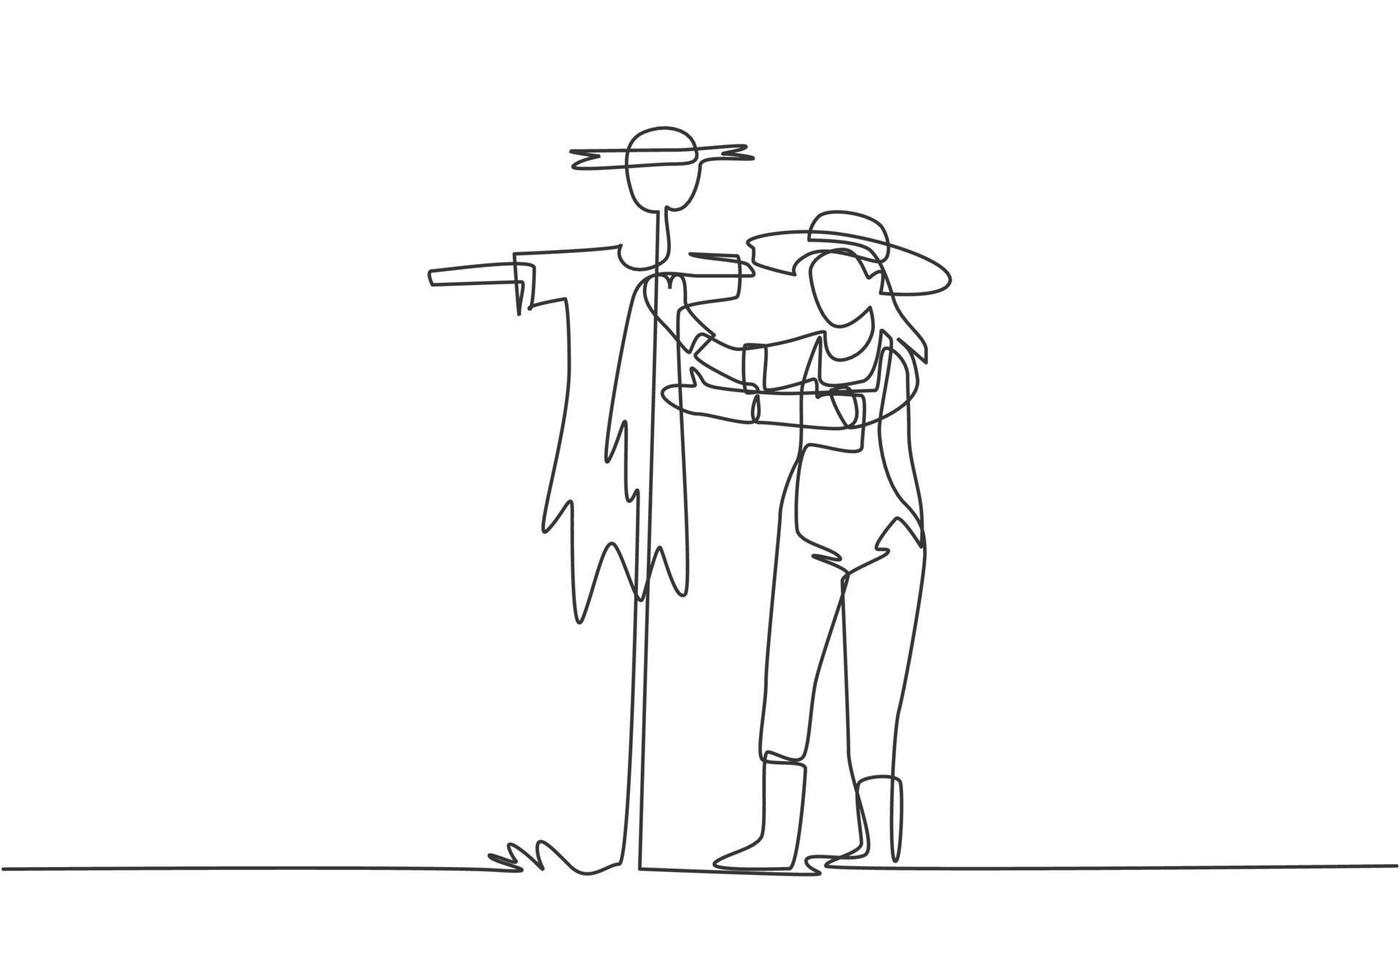 enda kontinuerlig linje som tecknar en ung kvinnlig bonde i en halmhatt som sätter upp fågelskrämma för att hålla fåglar från skadedjur. jordbruk minimalistiska koncept. en linje rita grafisk design vektor illustration.